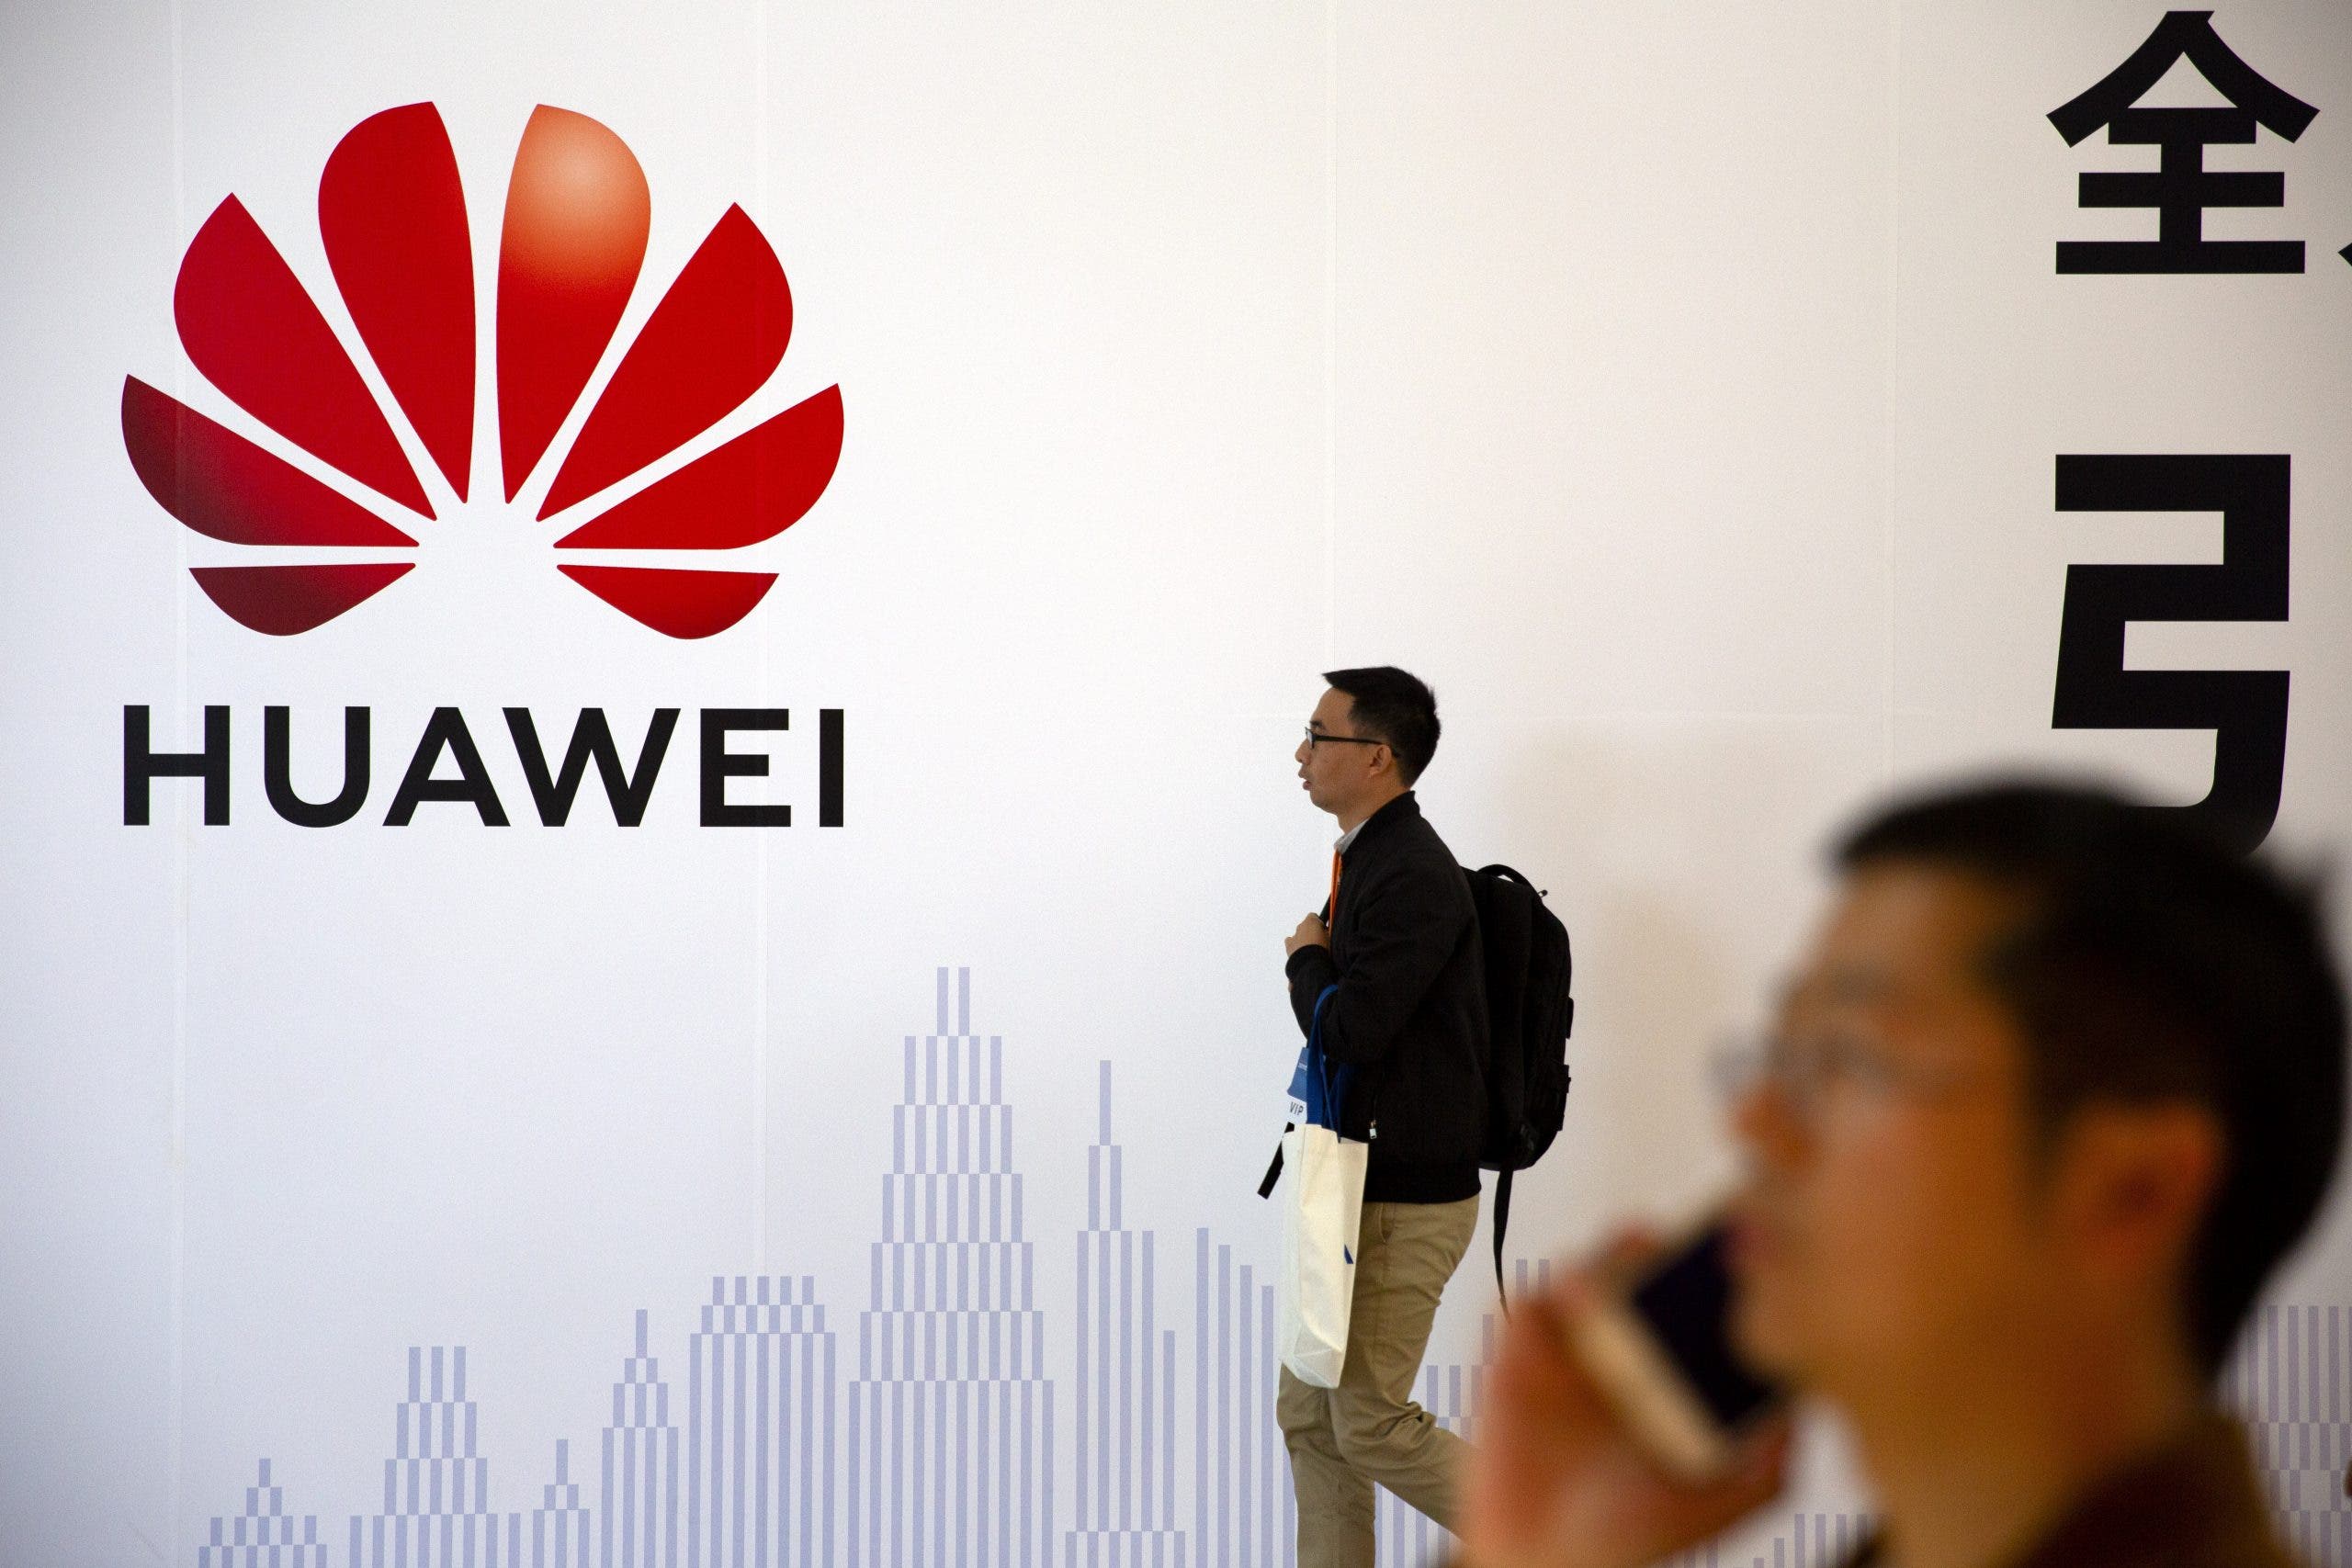 EEUU impone nueva ronda de restricciones a Huawei